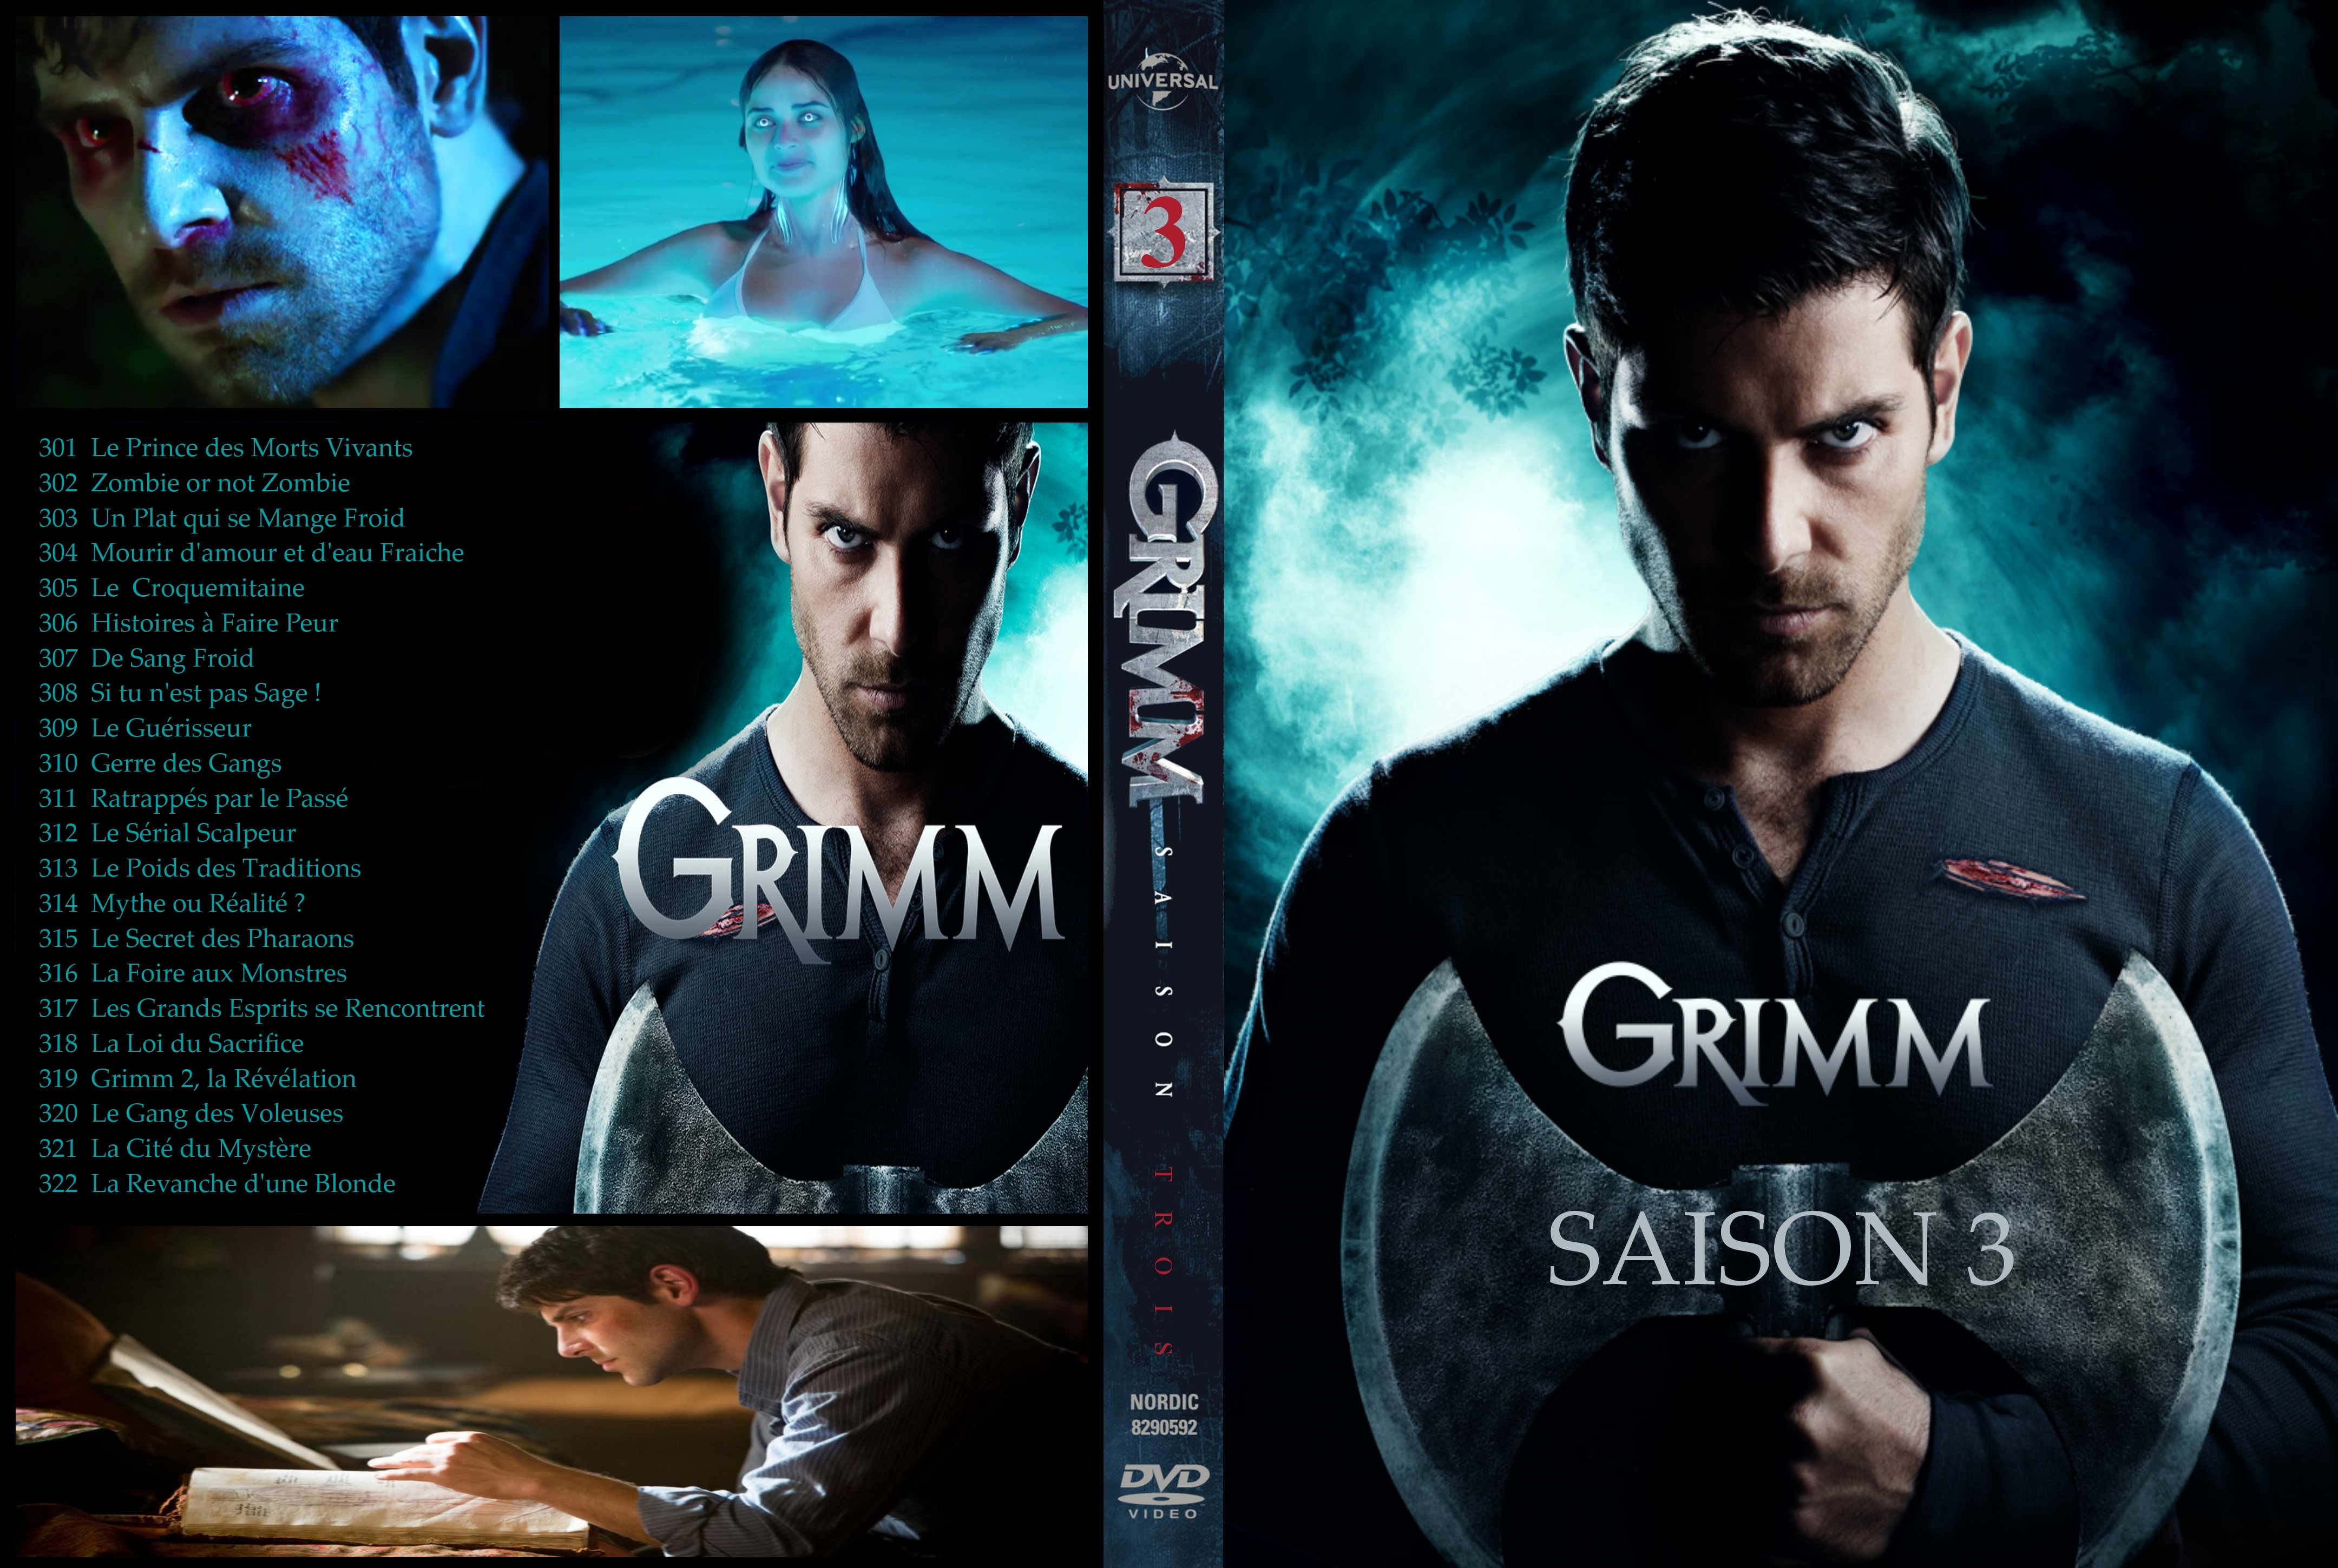 Jaquette DVD Grimm Saison 3 custom